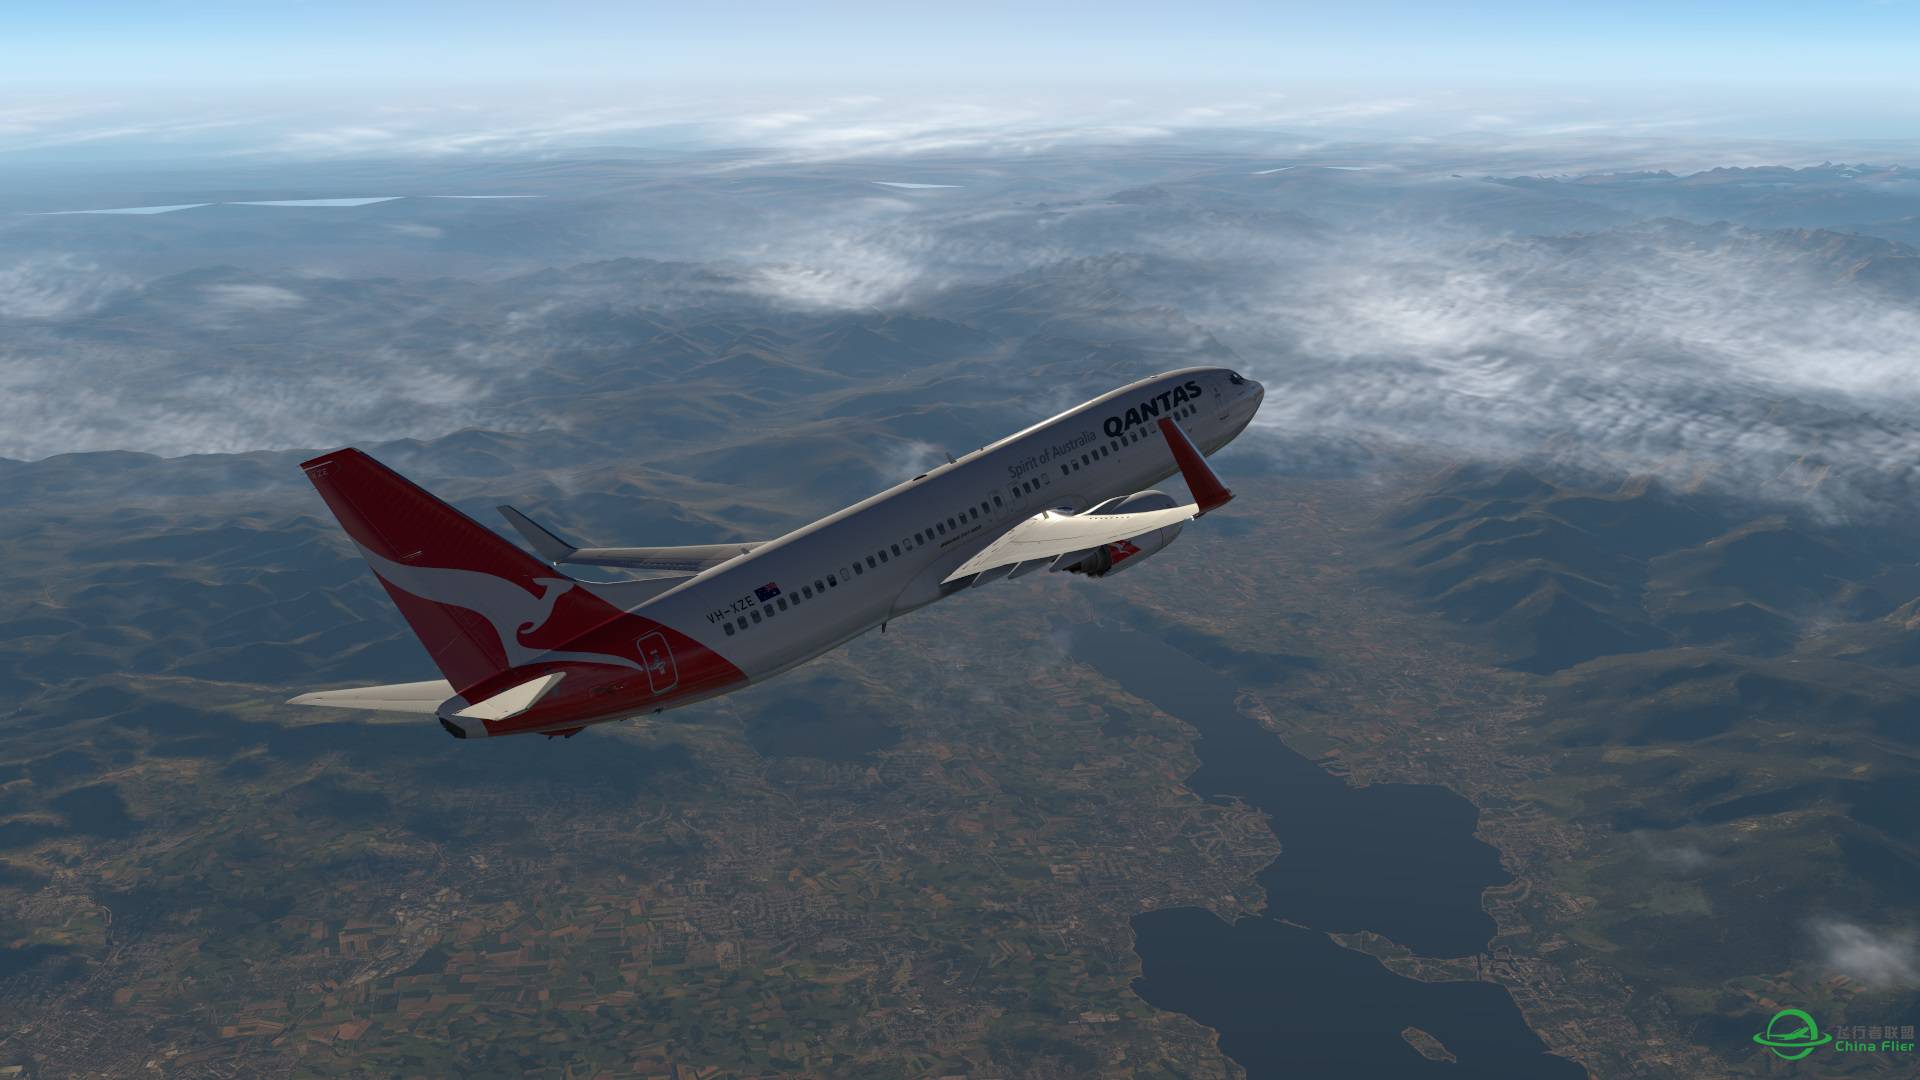 飞跃阿尔卑斯山 X-plane 11-2741 